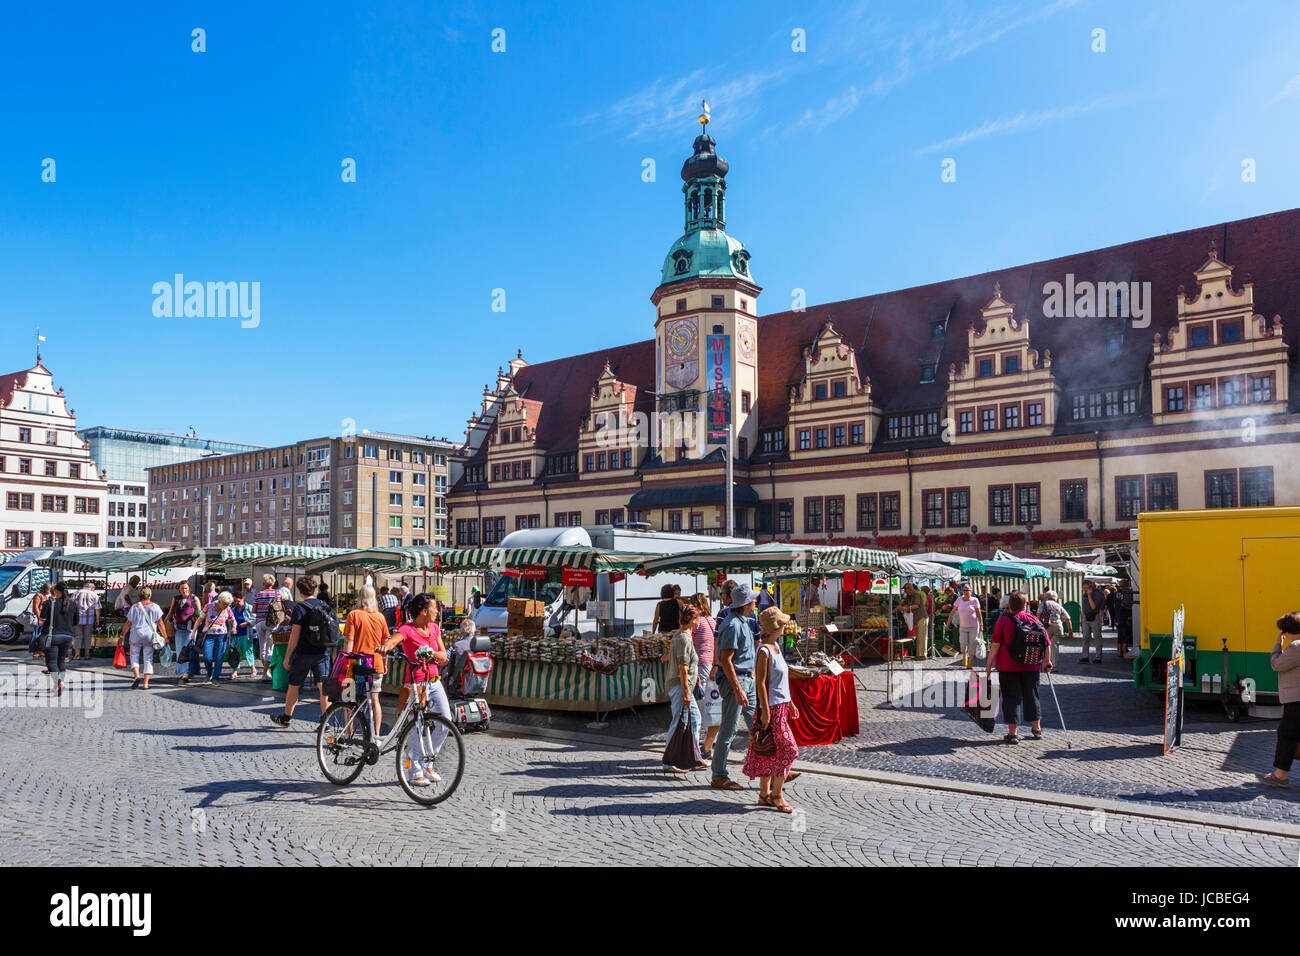 Leipzig, Germania. Mercato Markt (piazza del mercato) nella parte anteriore dell'Altes Rathaus (antico municipio), Lipsia, Sassonia, Germania Foto Stock